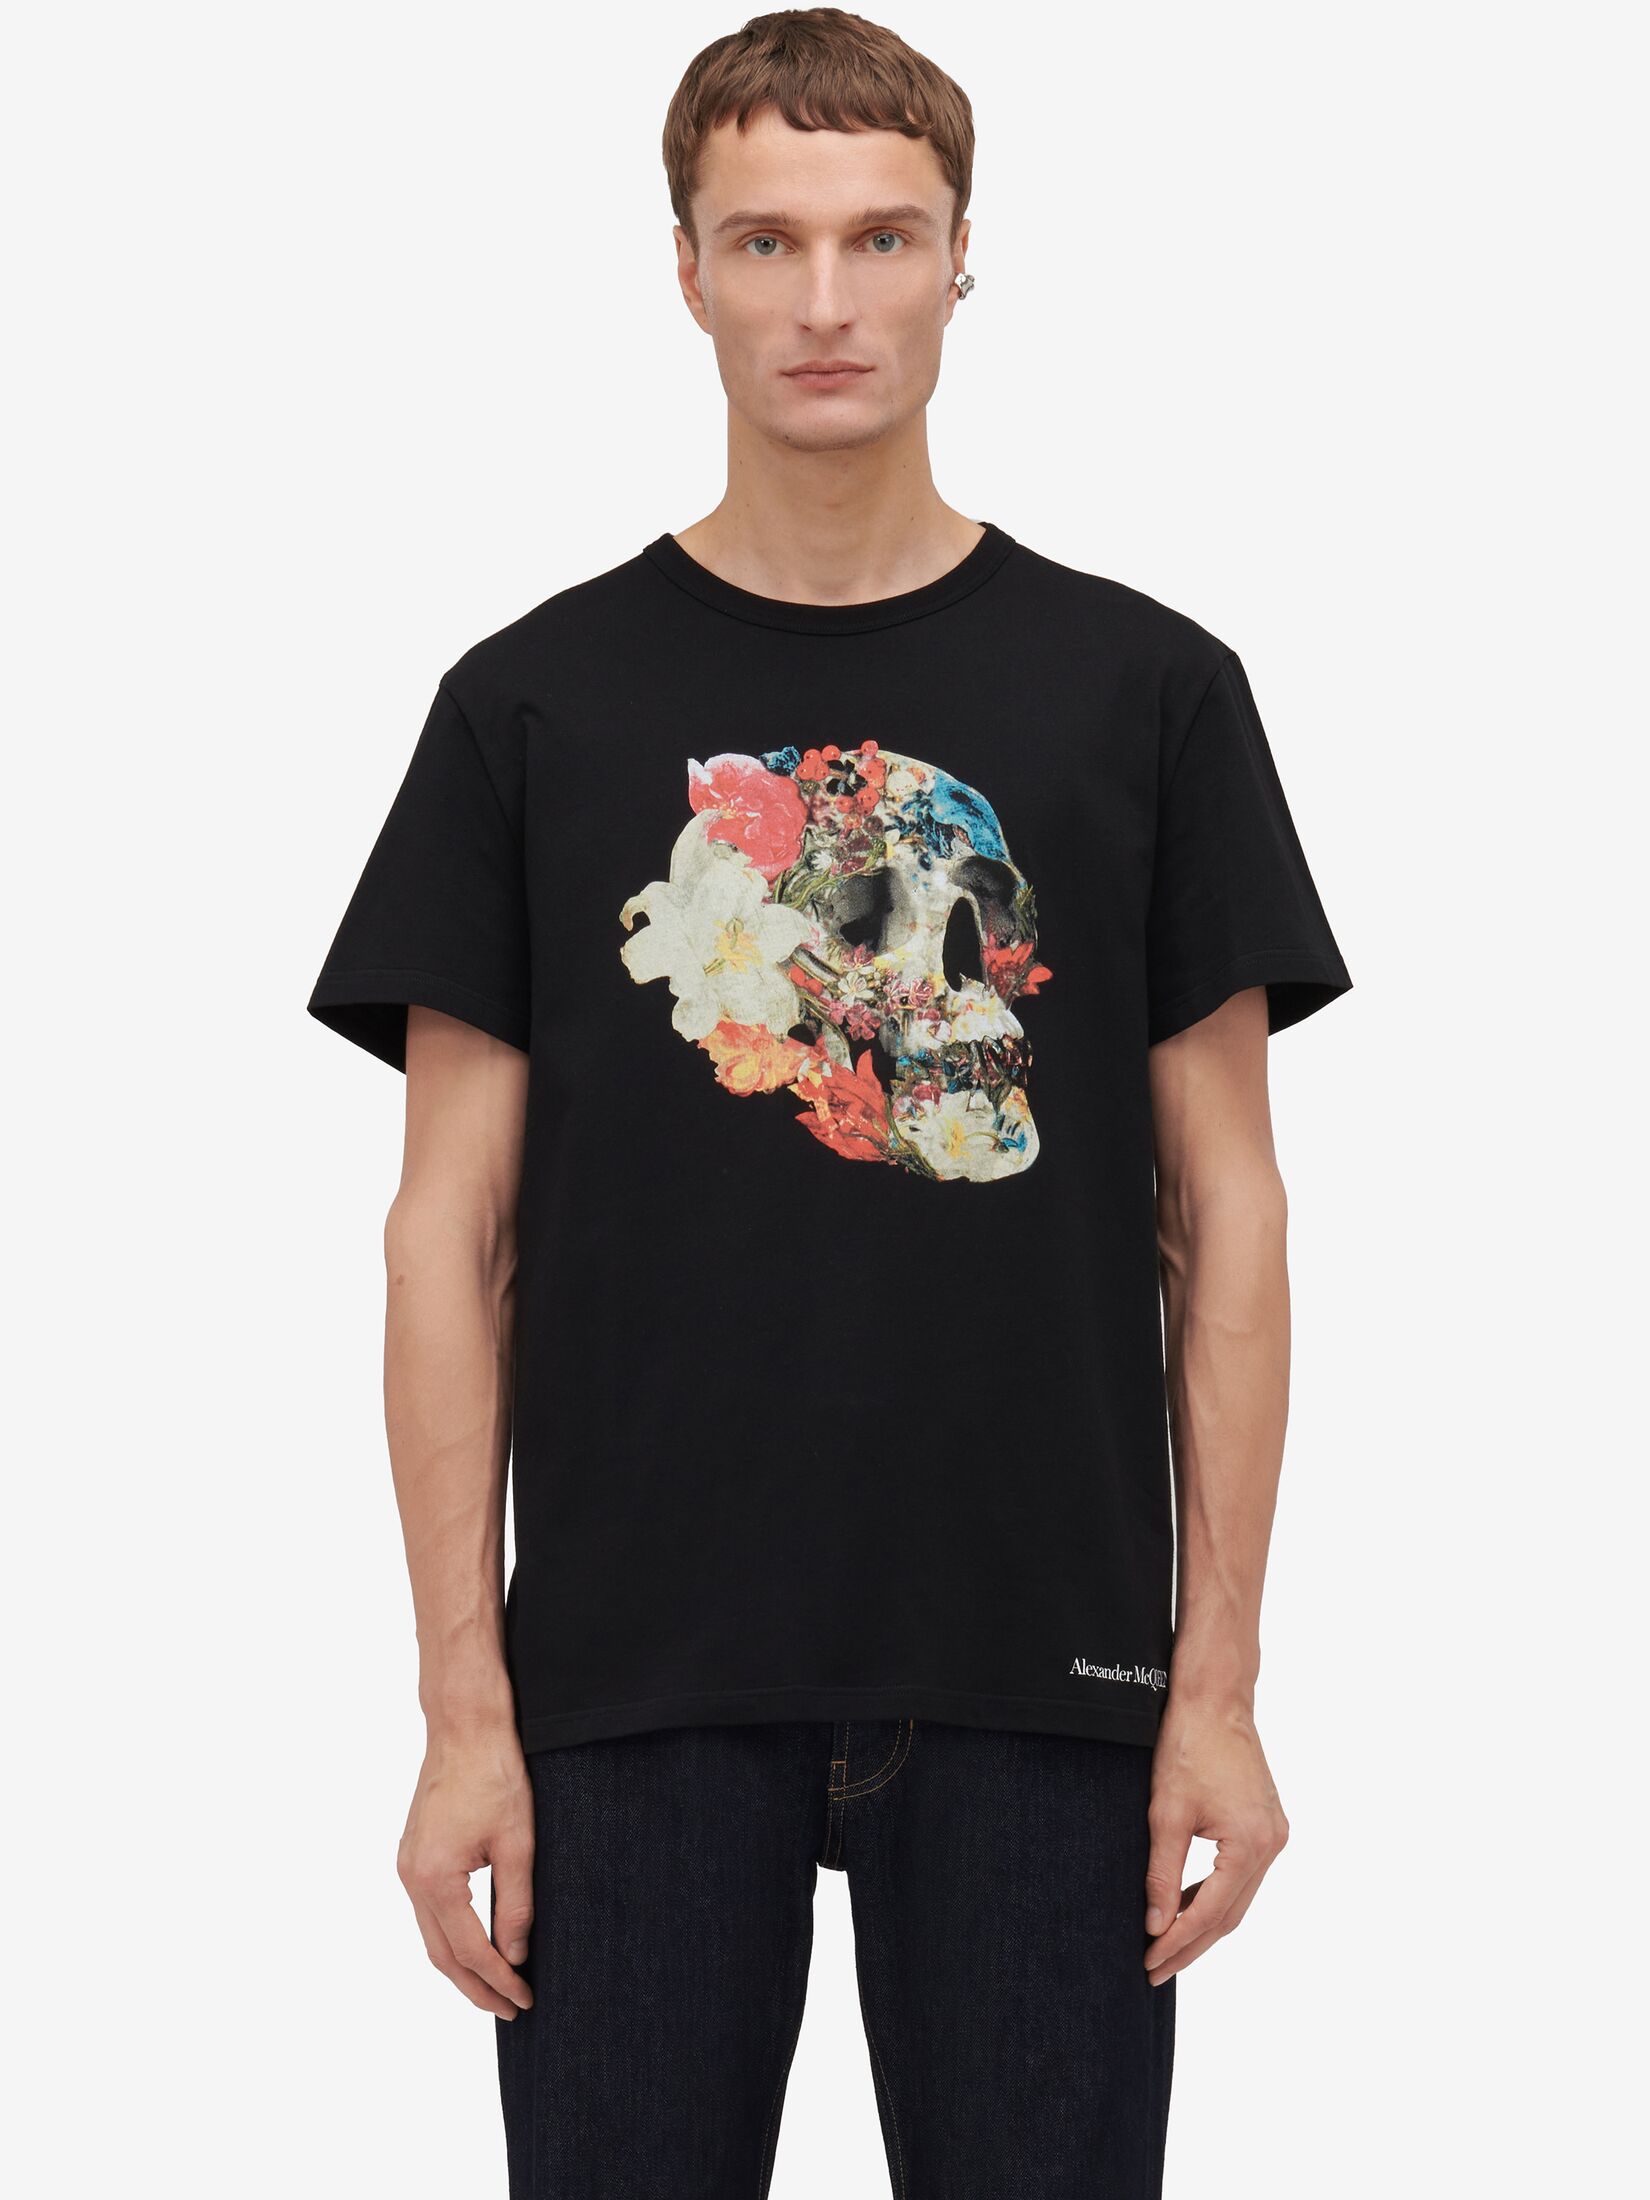 T-shirt Floral Skull